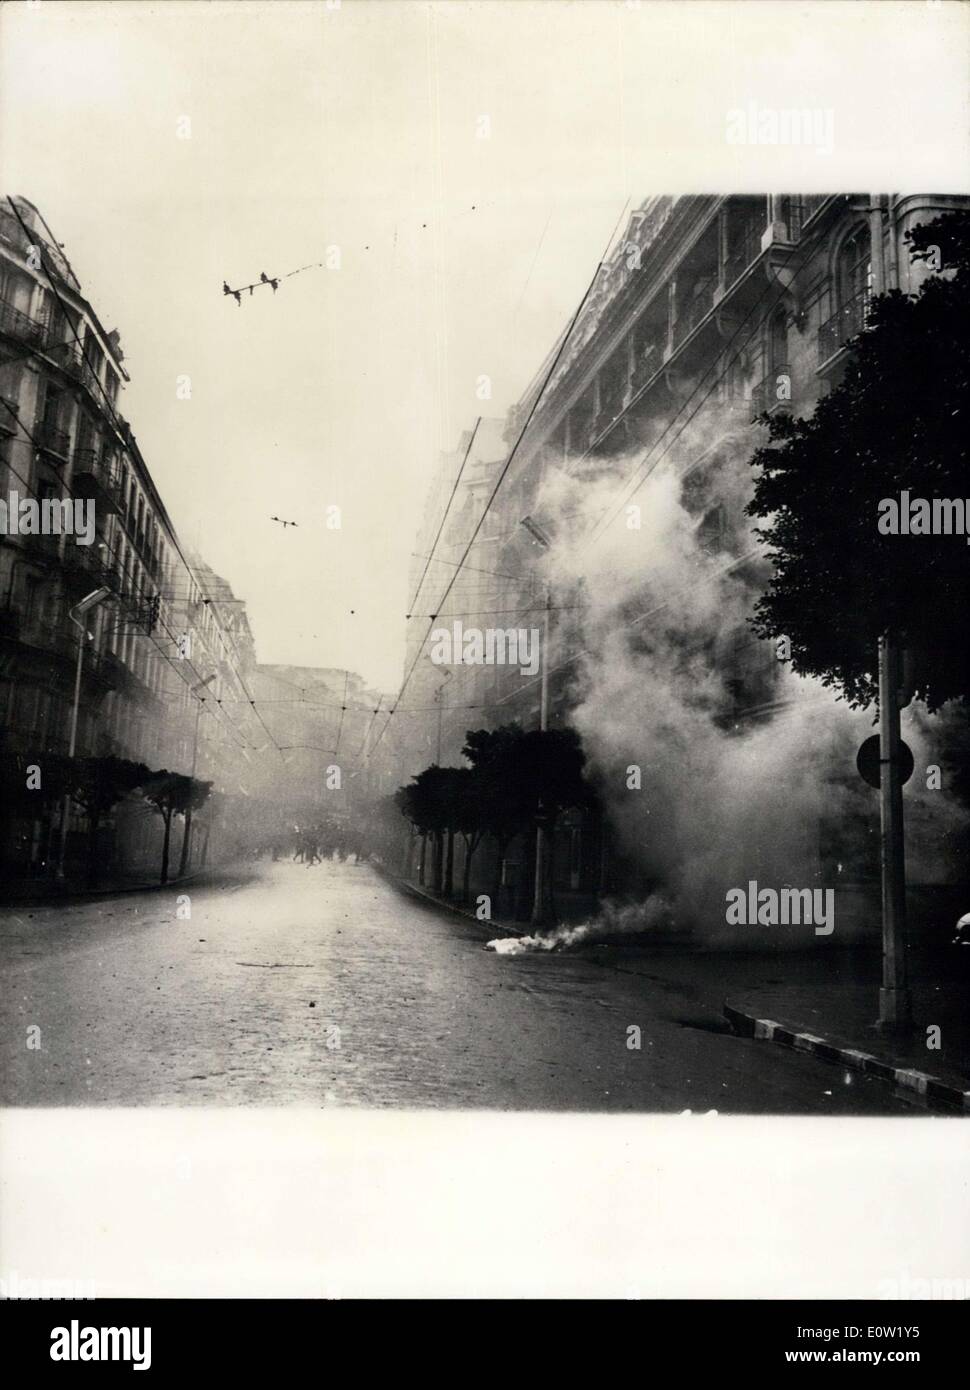 11 déc., 1960 - émeutes en Algérie les pompiers mettent leurs tuyaux en préparation à l'utilisation contre des manifestants à Oran, hier. Banque D'Images